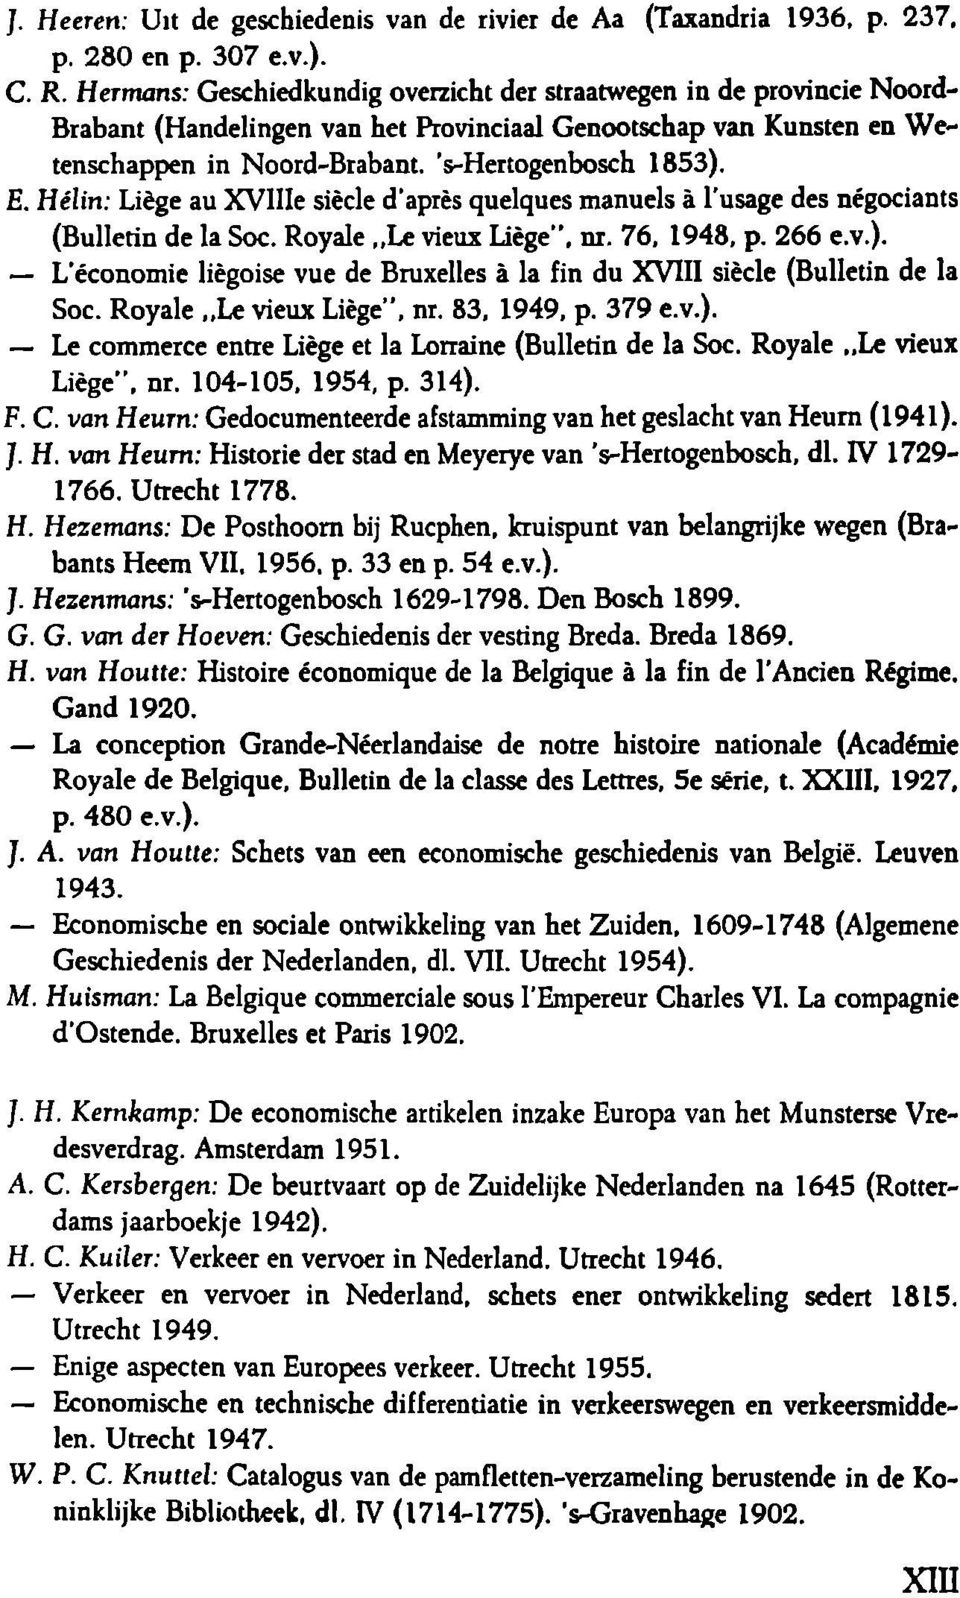 Hélin: Liège au XVlIIe siècle d'après quelques manuels à l'usage des négociants (Bulletin de la Soc. Royale Le vieux Liège", nr. 76, 1948, p. 266 e.v.).